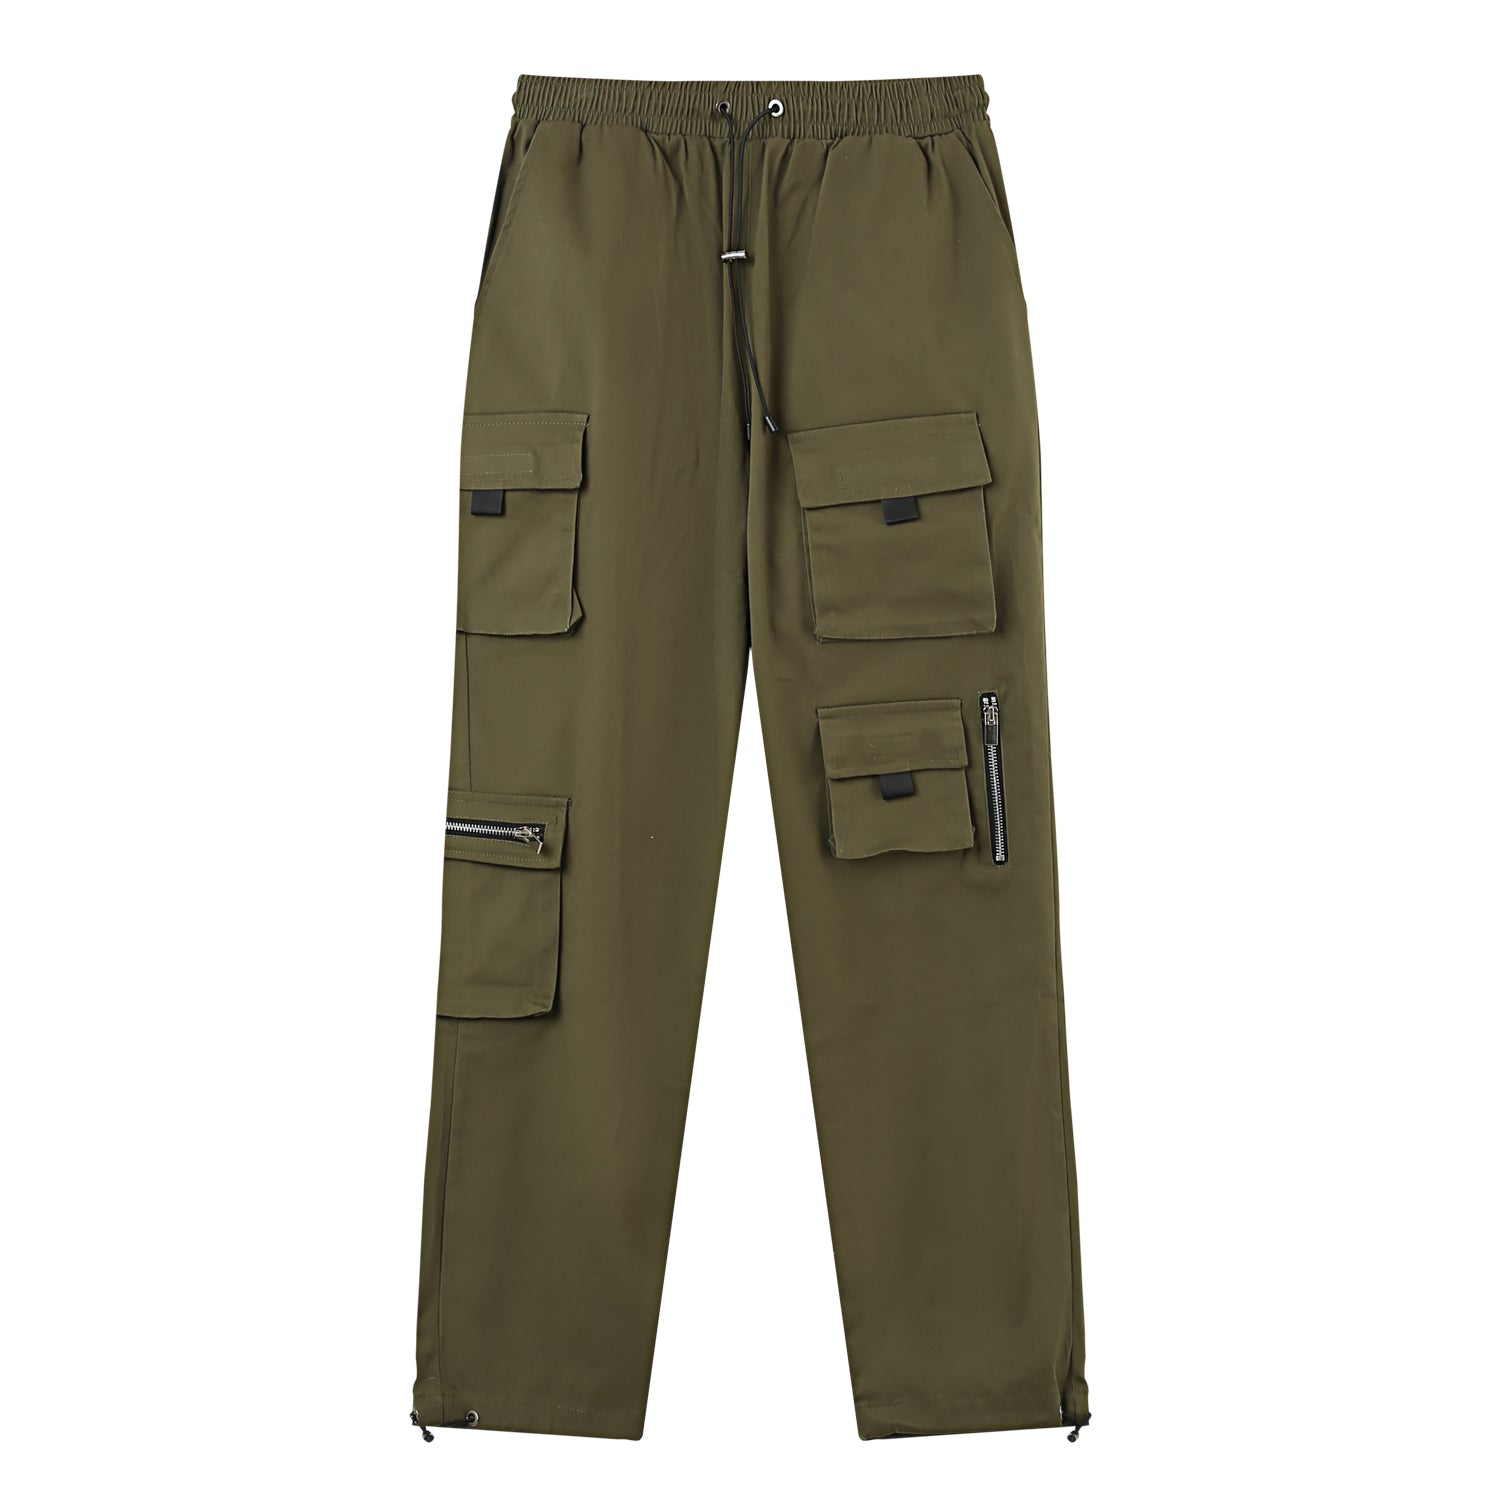 Twill pockets cargo pants Khaki green